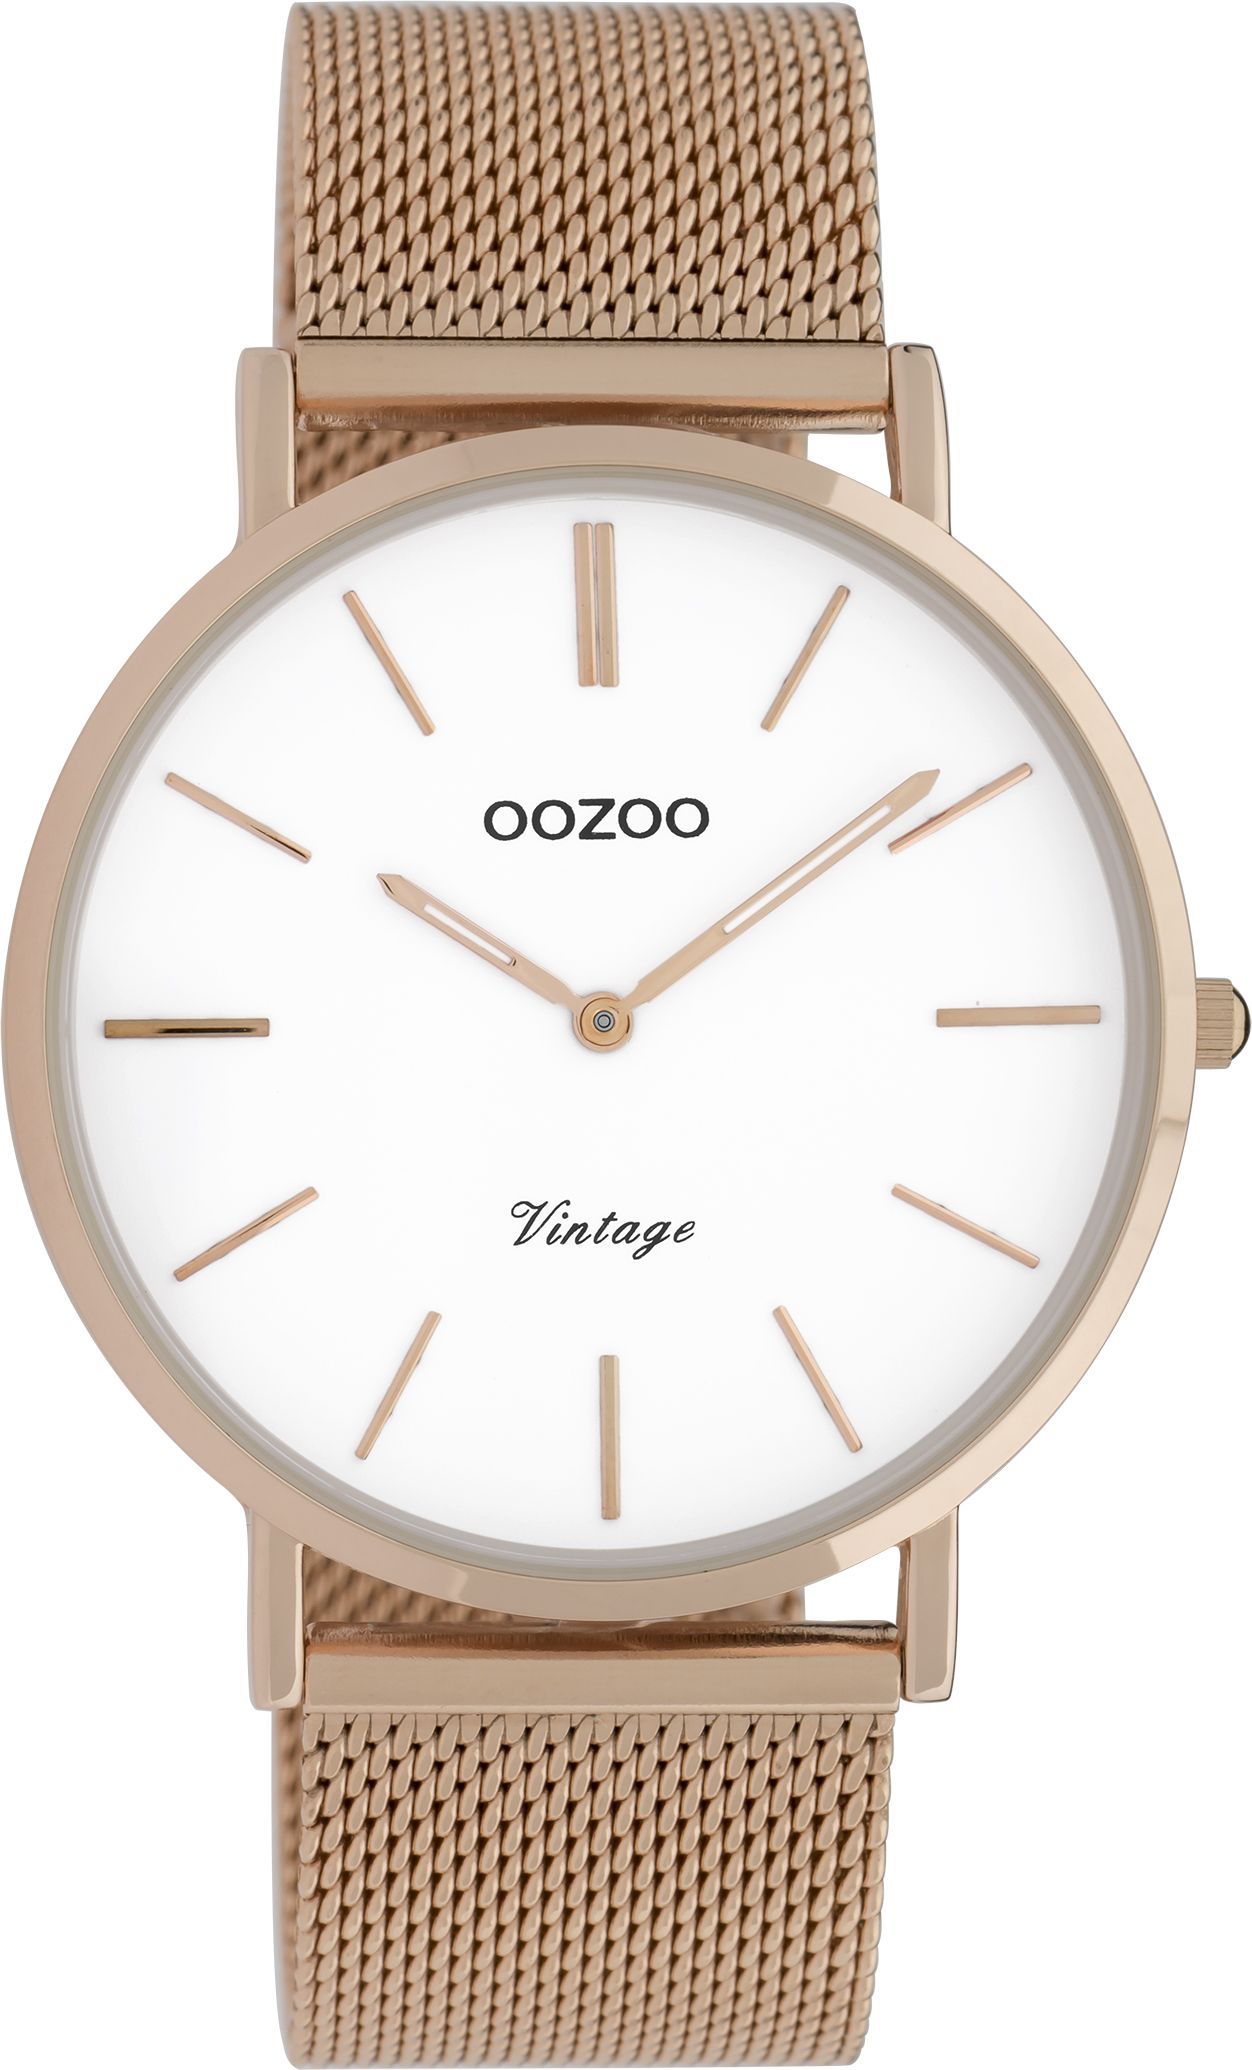 OOZOO Vintage C9917